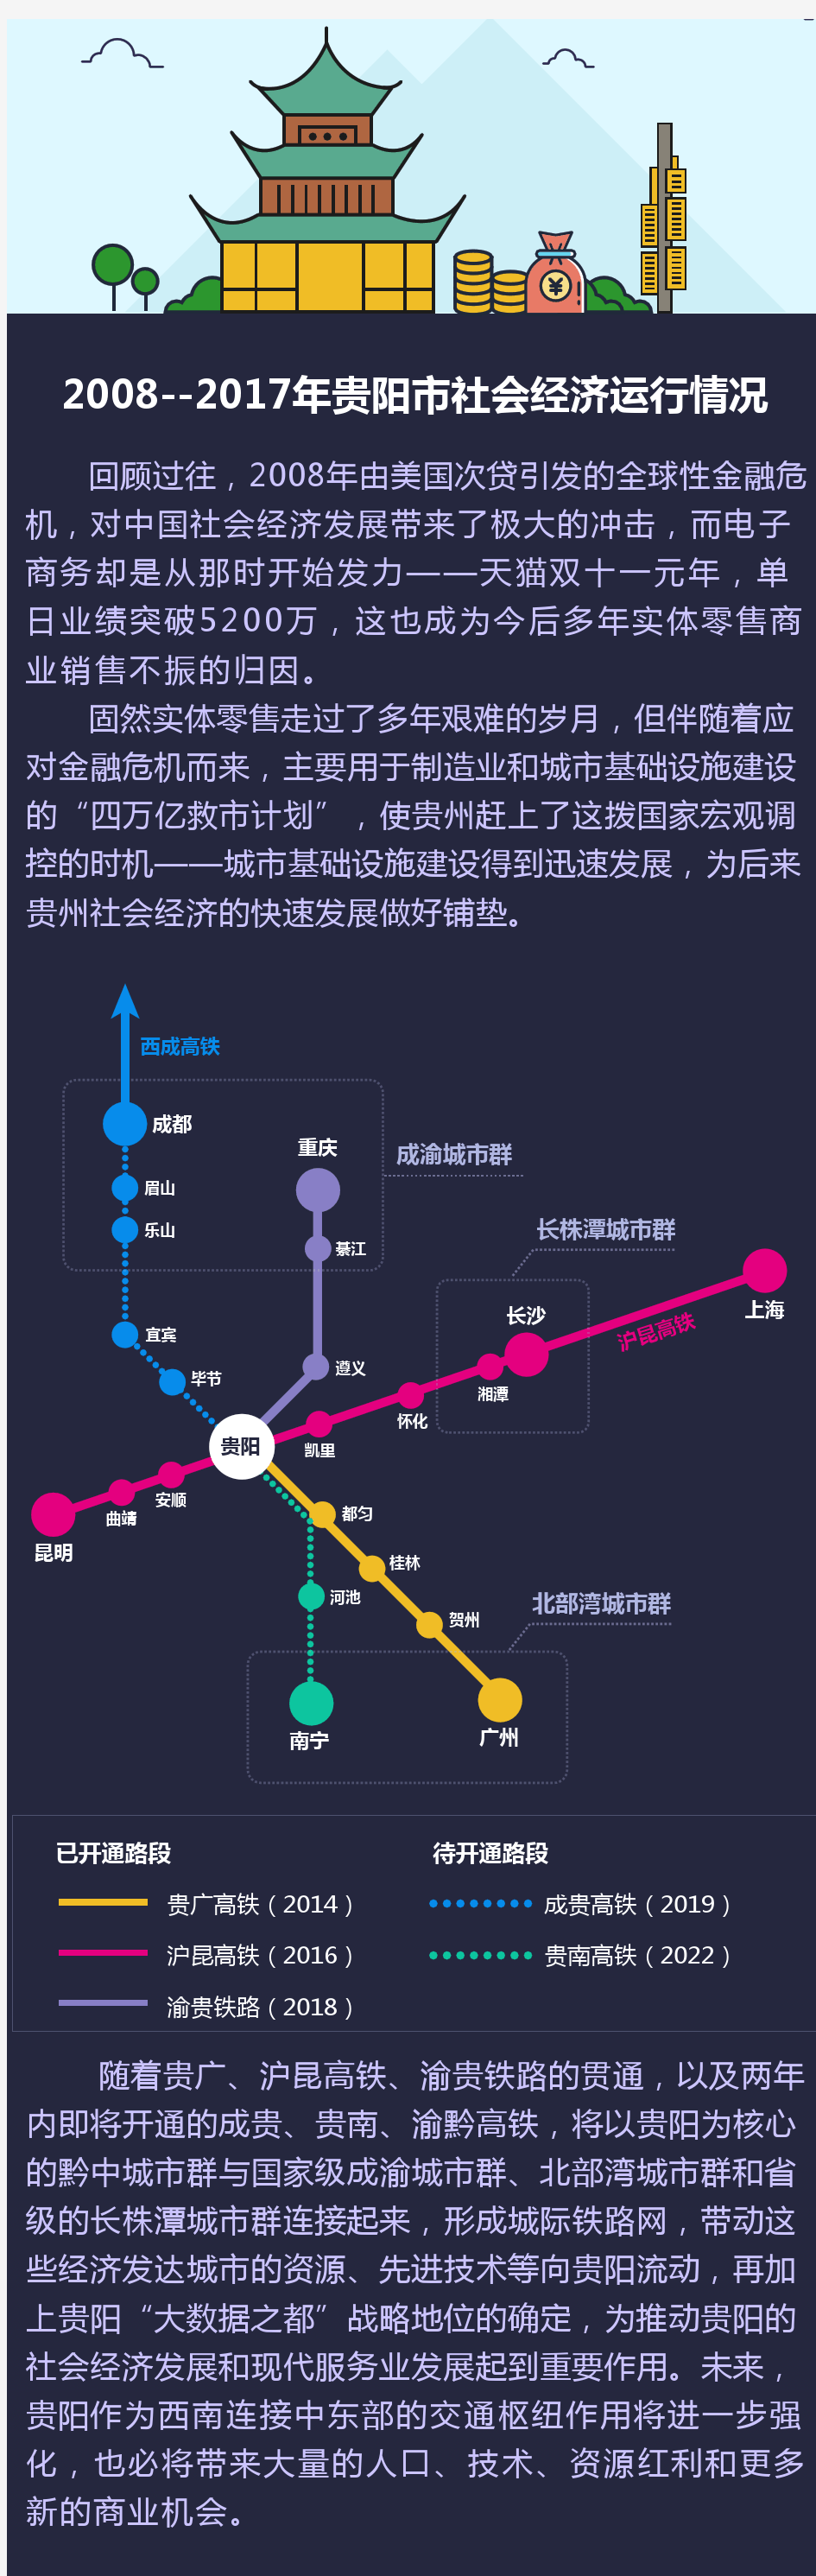 贵阳市商业发展报告2018(上)